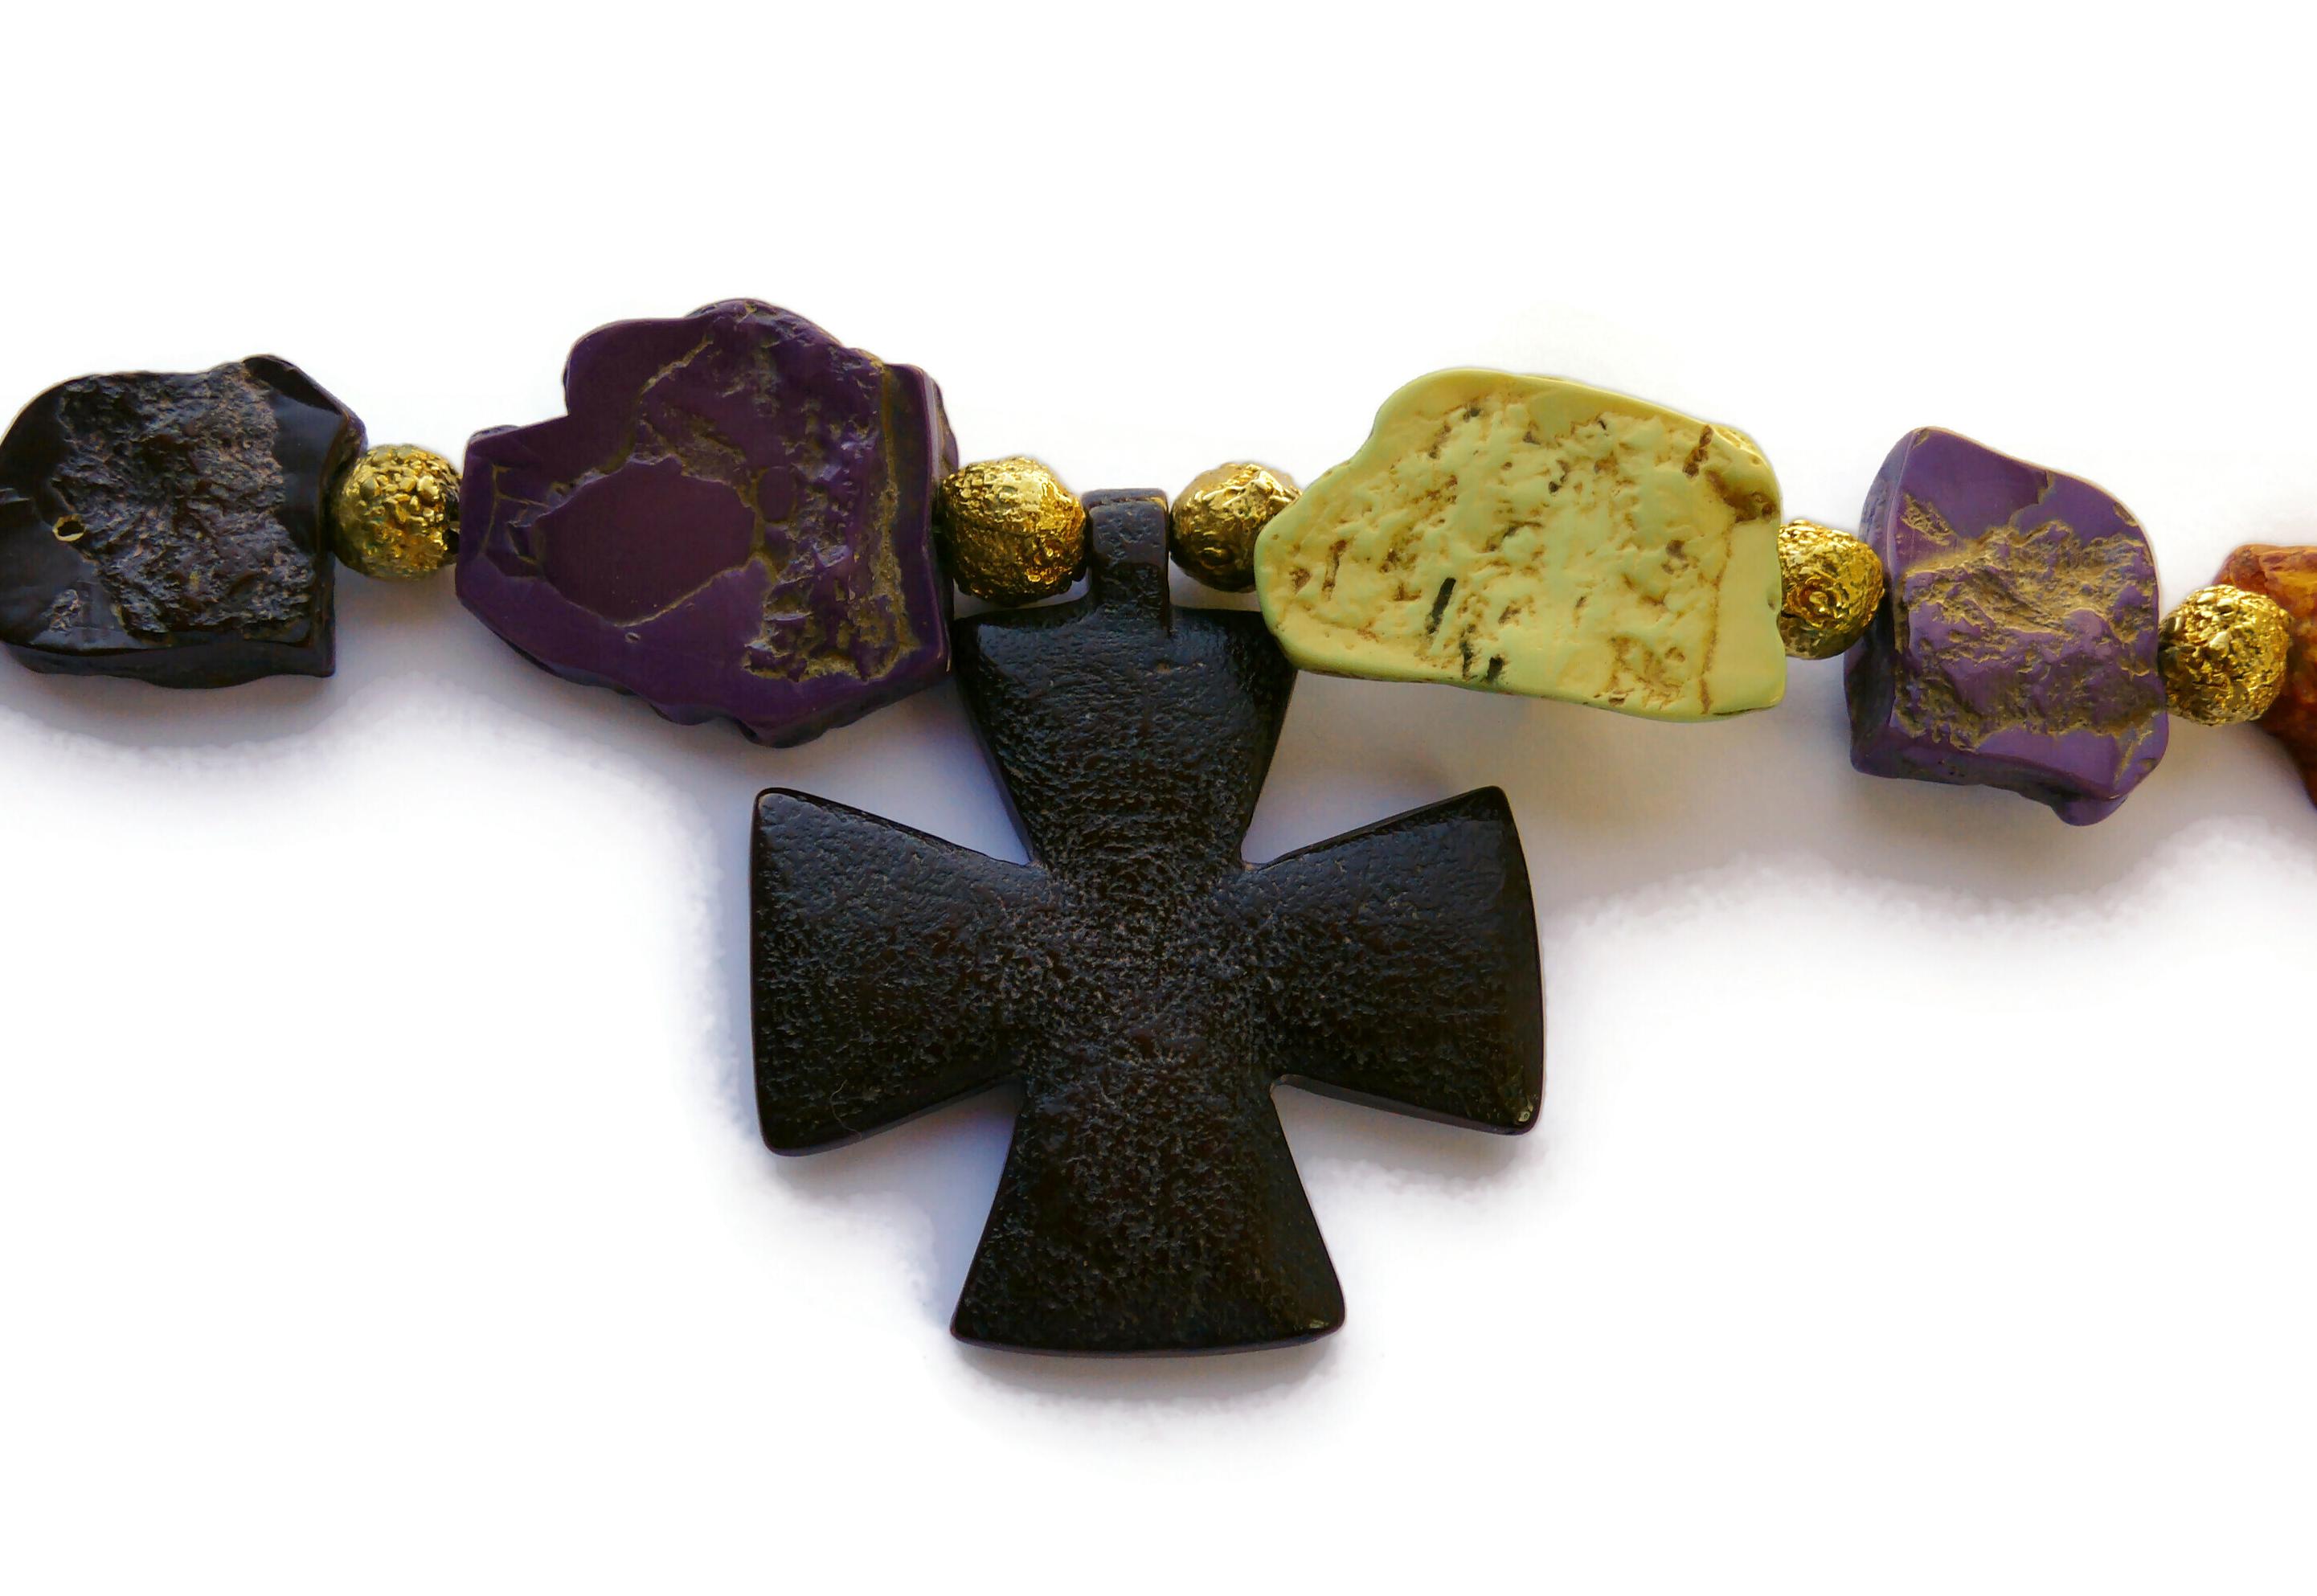 YVES SAINT LAURENT YSL Rive Gauche Vintage Faux Stones Cross Pendant Necklace For Sale 2